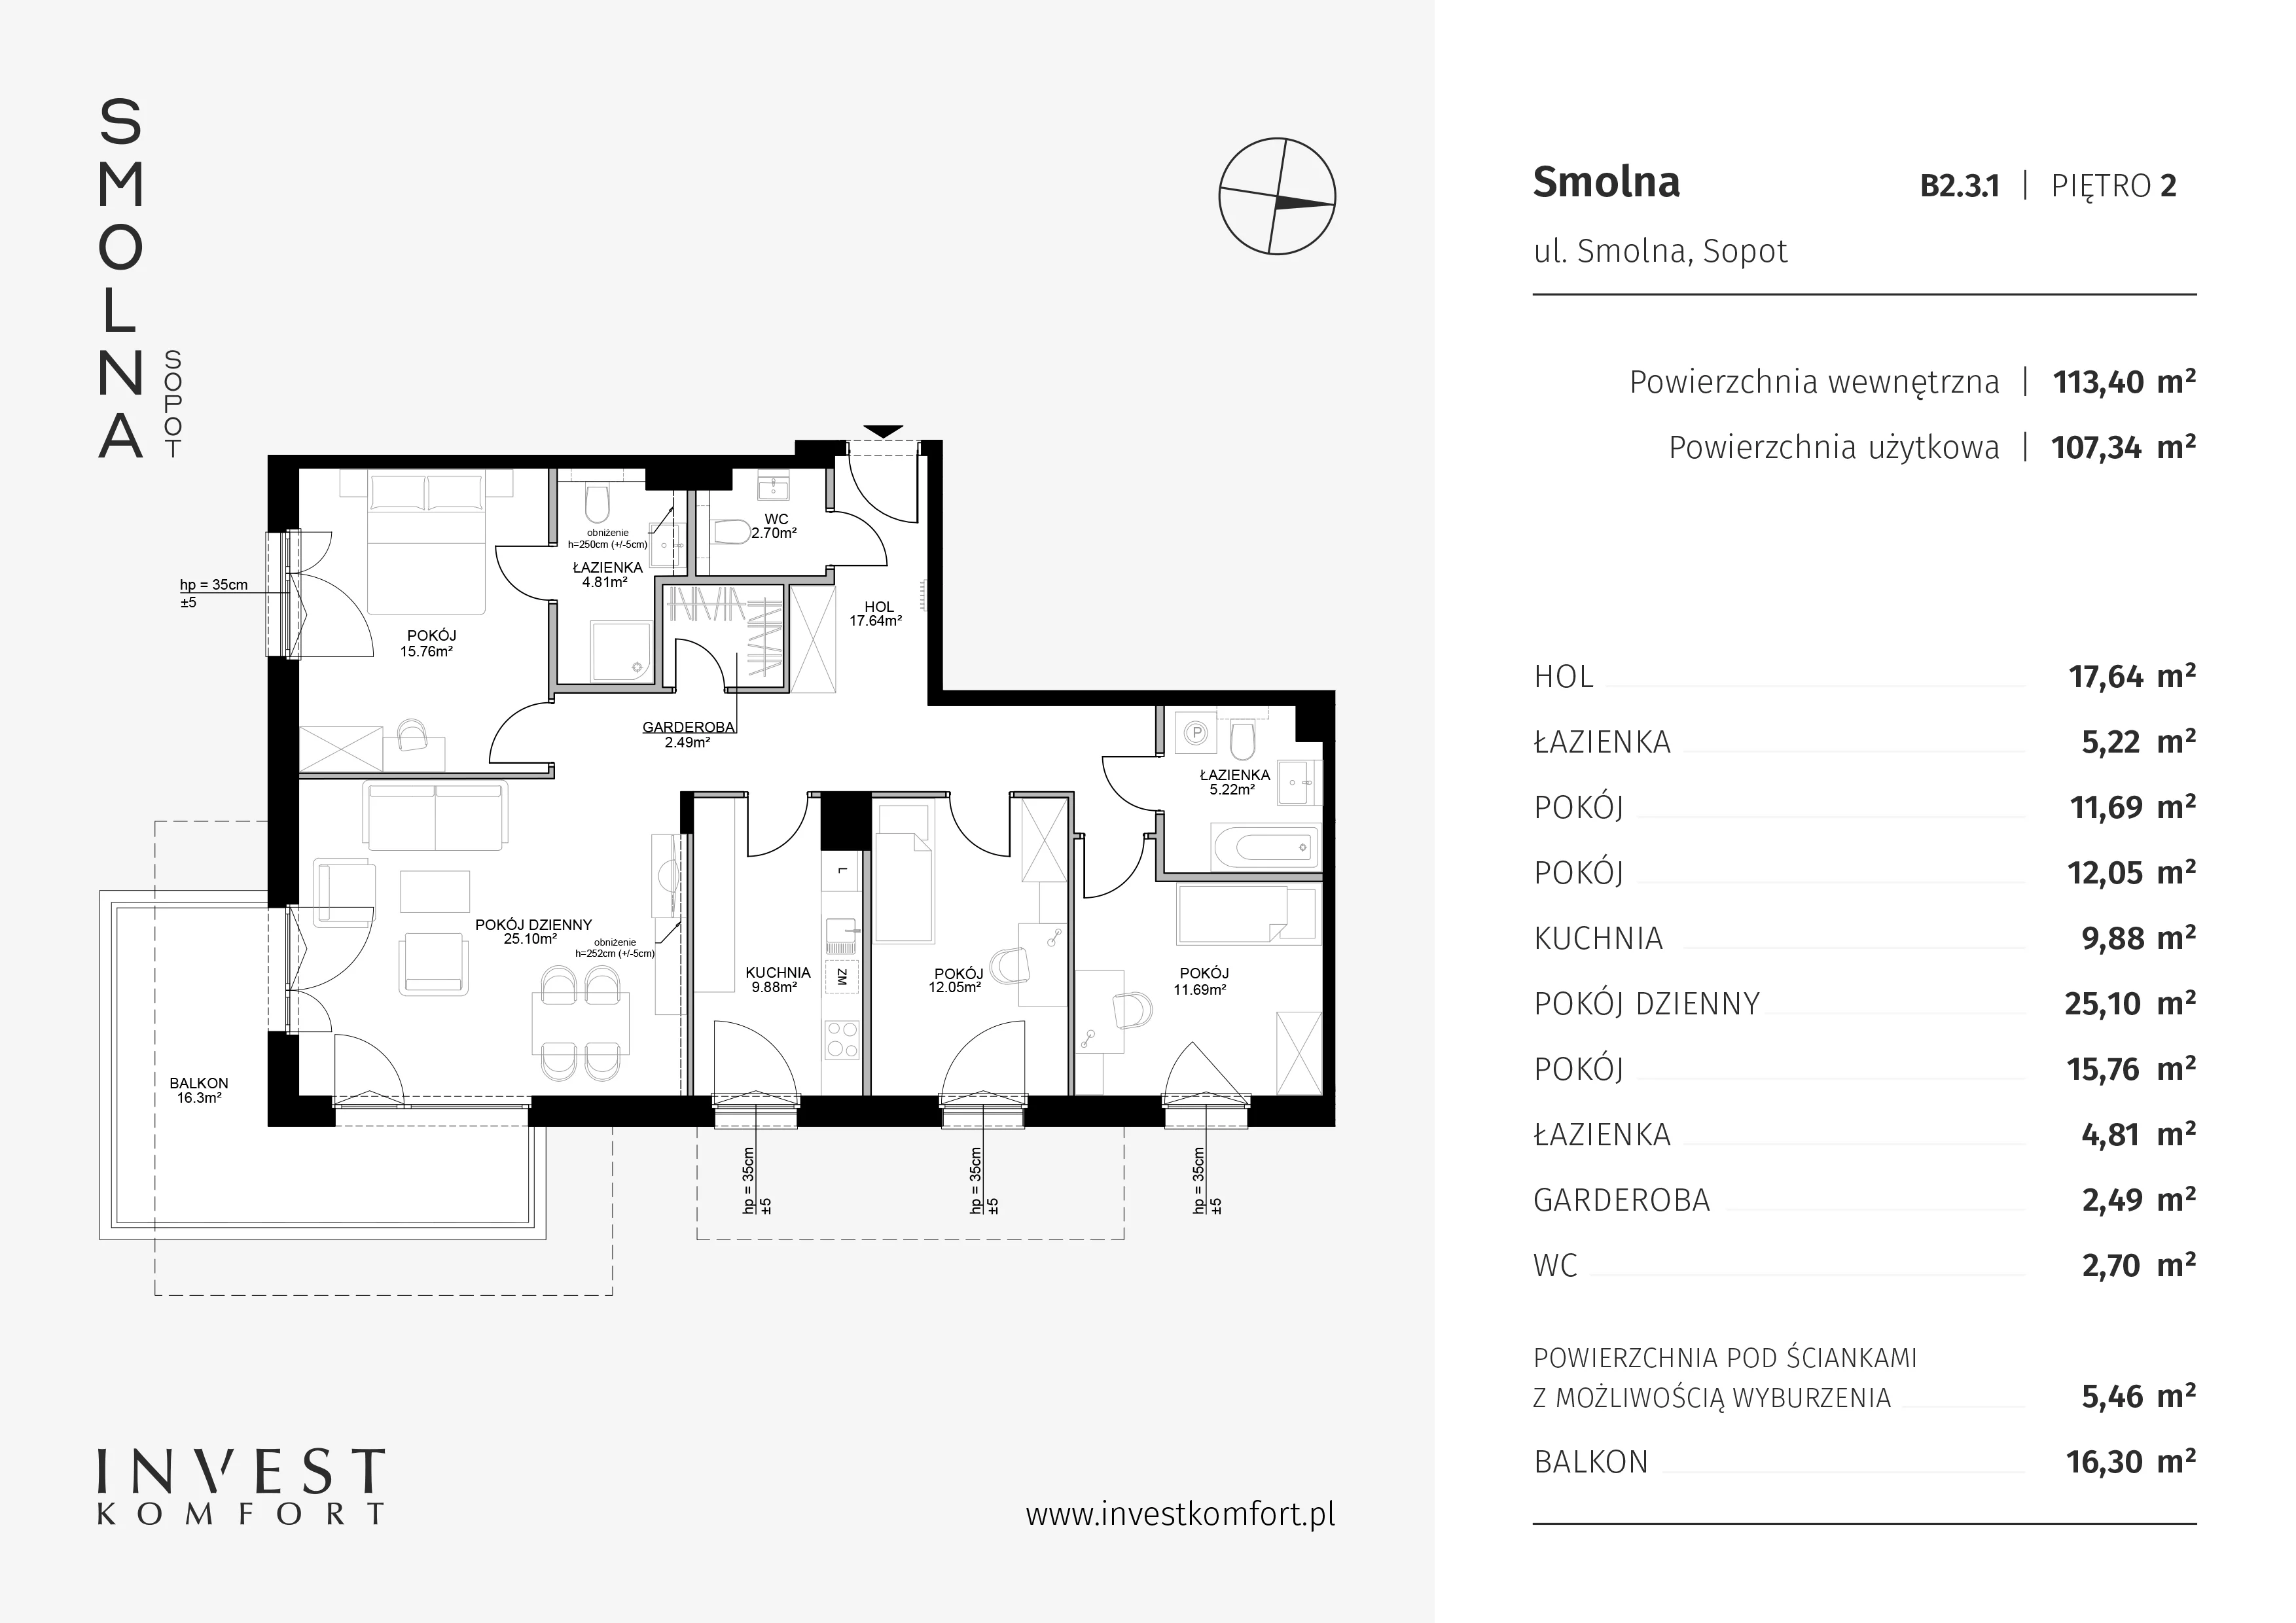 Mieszkanie 113,40 m², piętro 2, oferta nr B2.3.1, Smolna, Sopot, Świemirowo, ul. Smolna